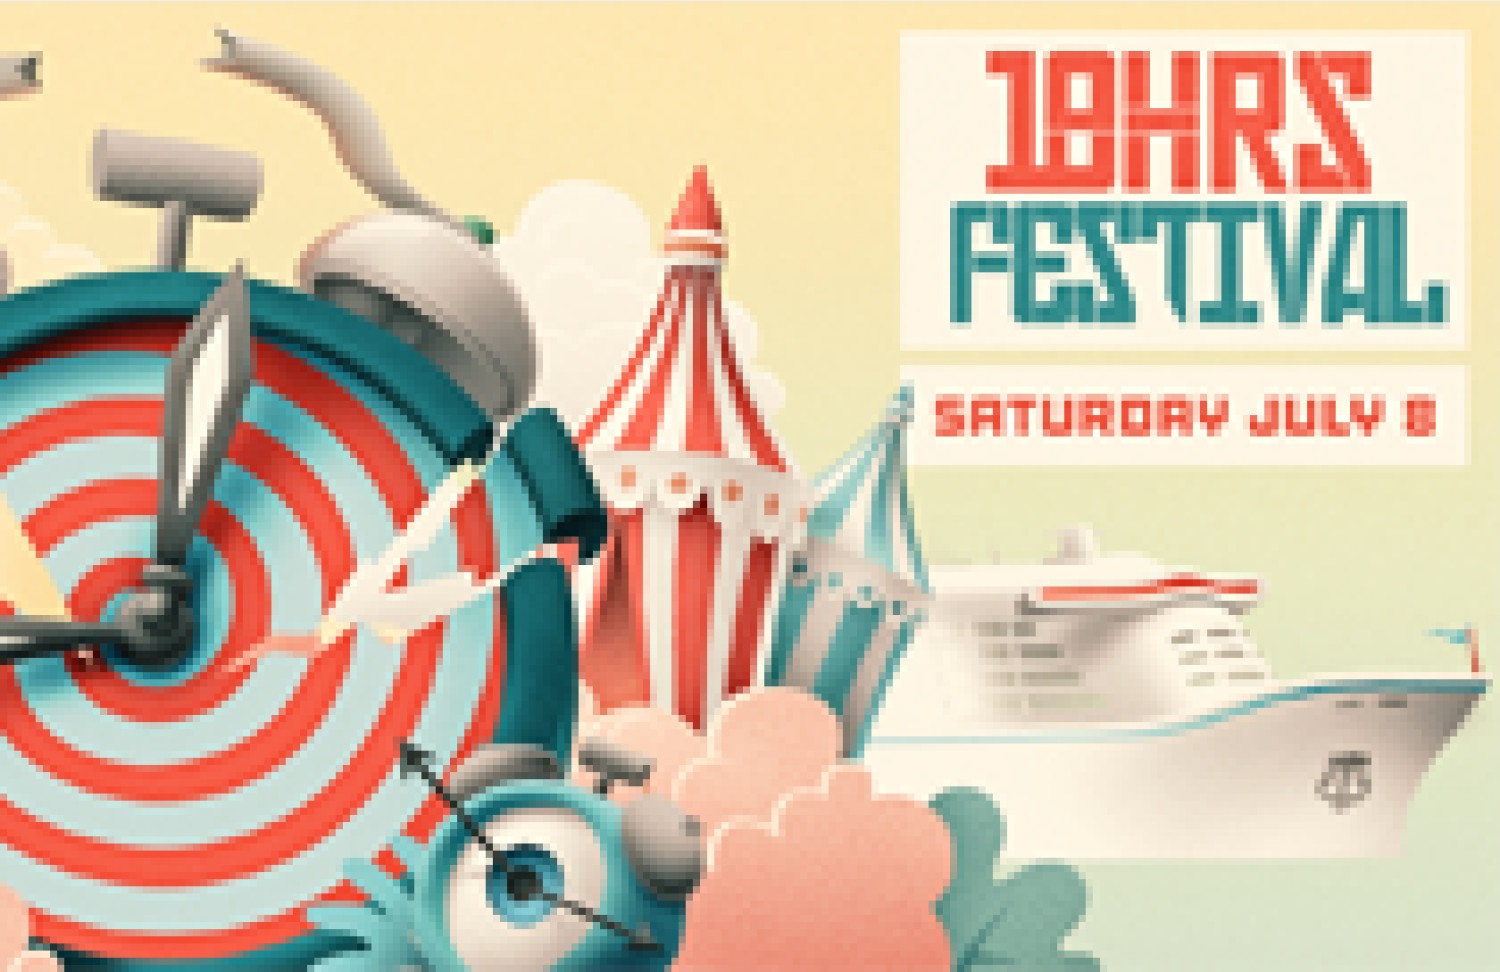 Party nieuws: 18hrs festival 2017 maakt de volledige line-up bekend